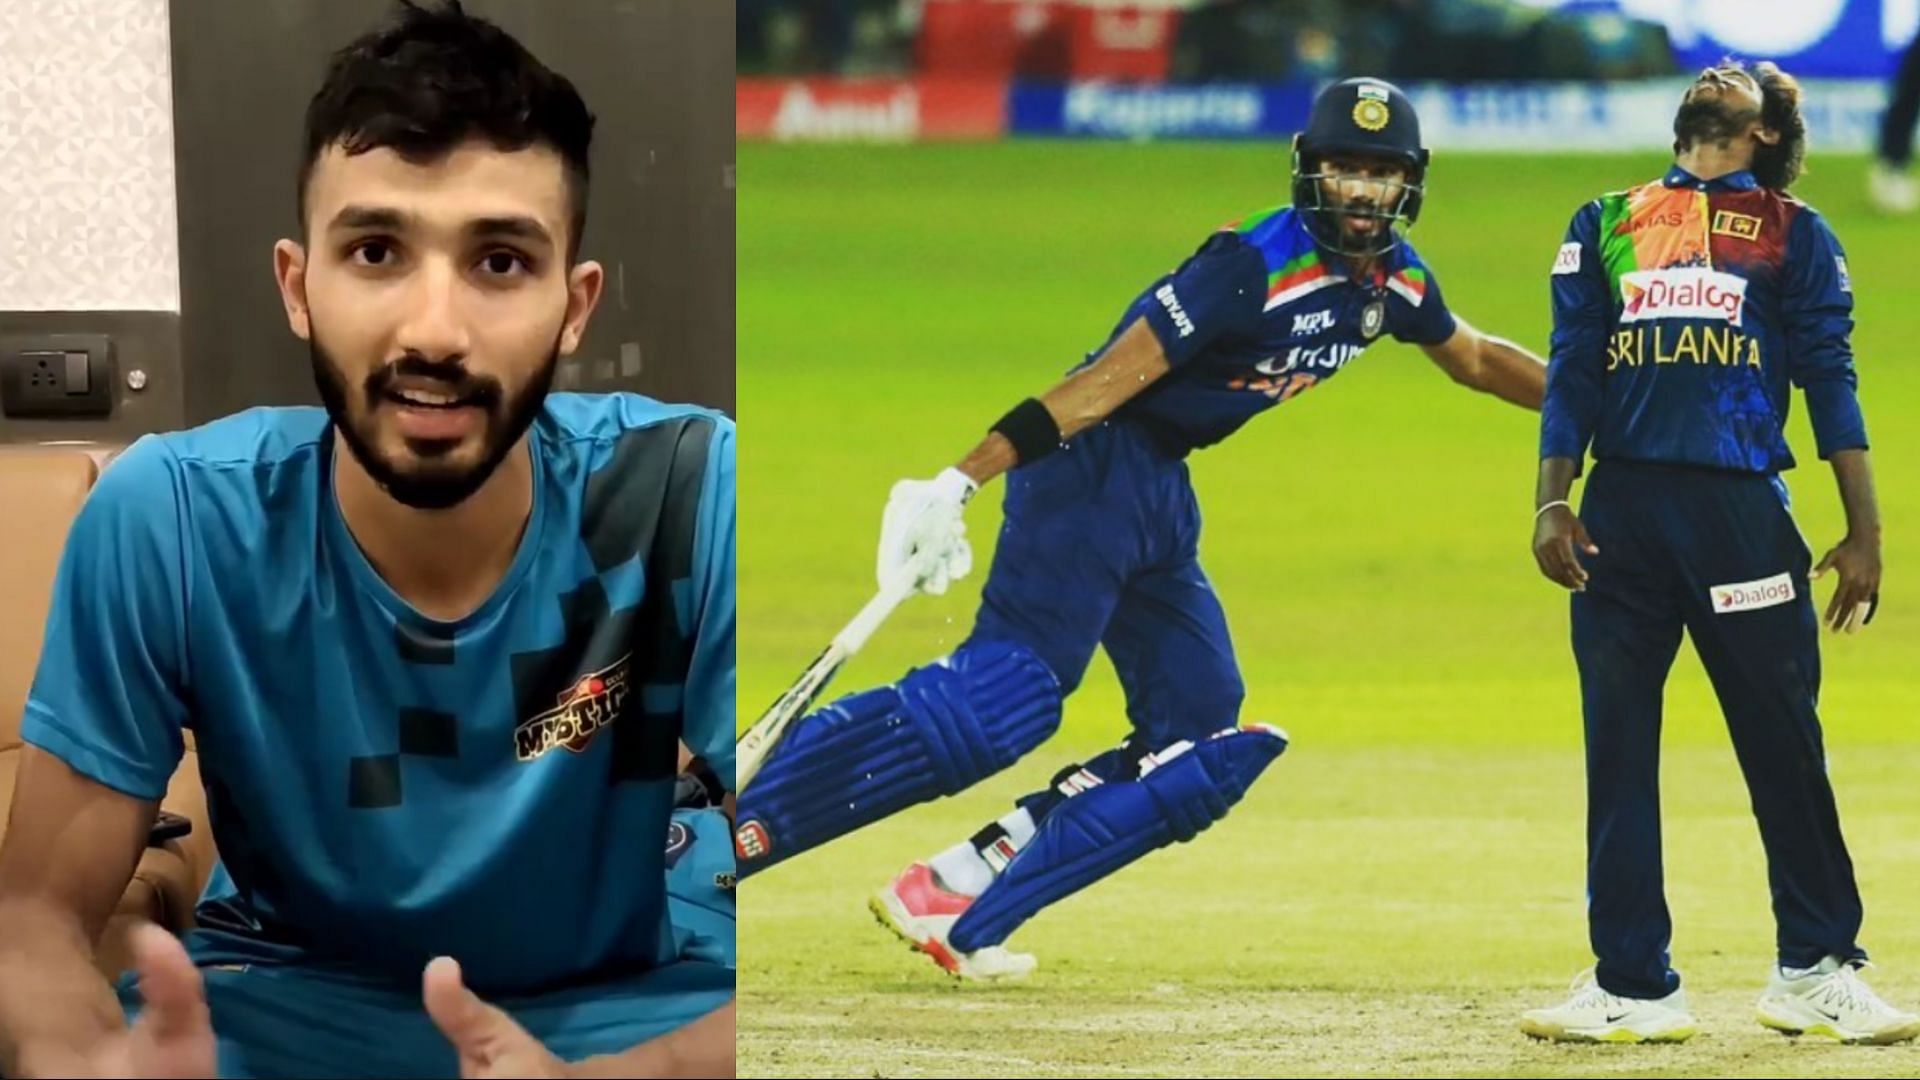 Devdutt Padikkal made his international debut for the Indian team last year against Sri Lanka (Image: Instagram)